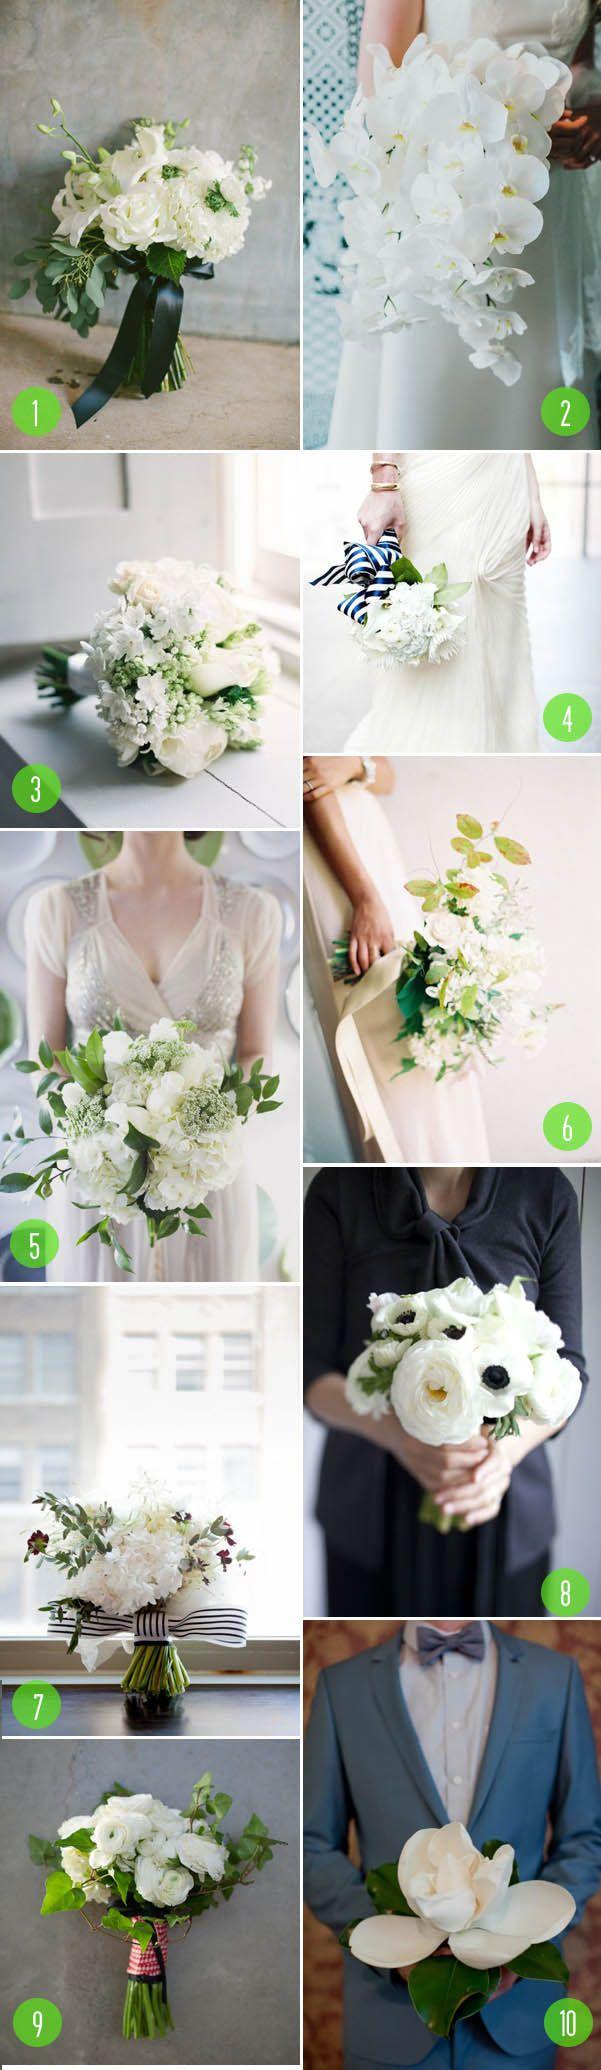 زفاف - Top 10: White Bouquets